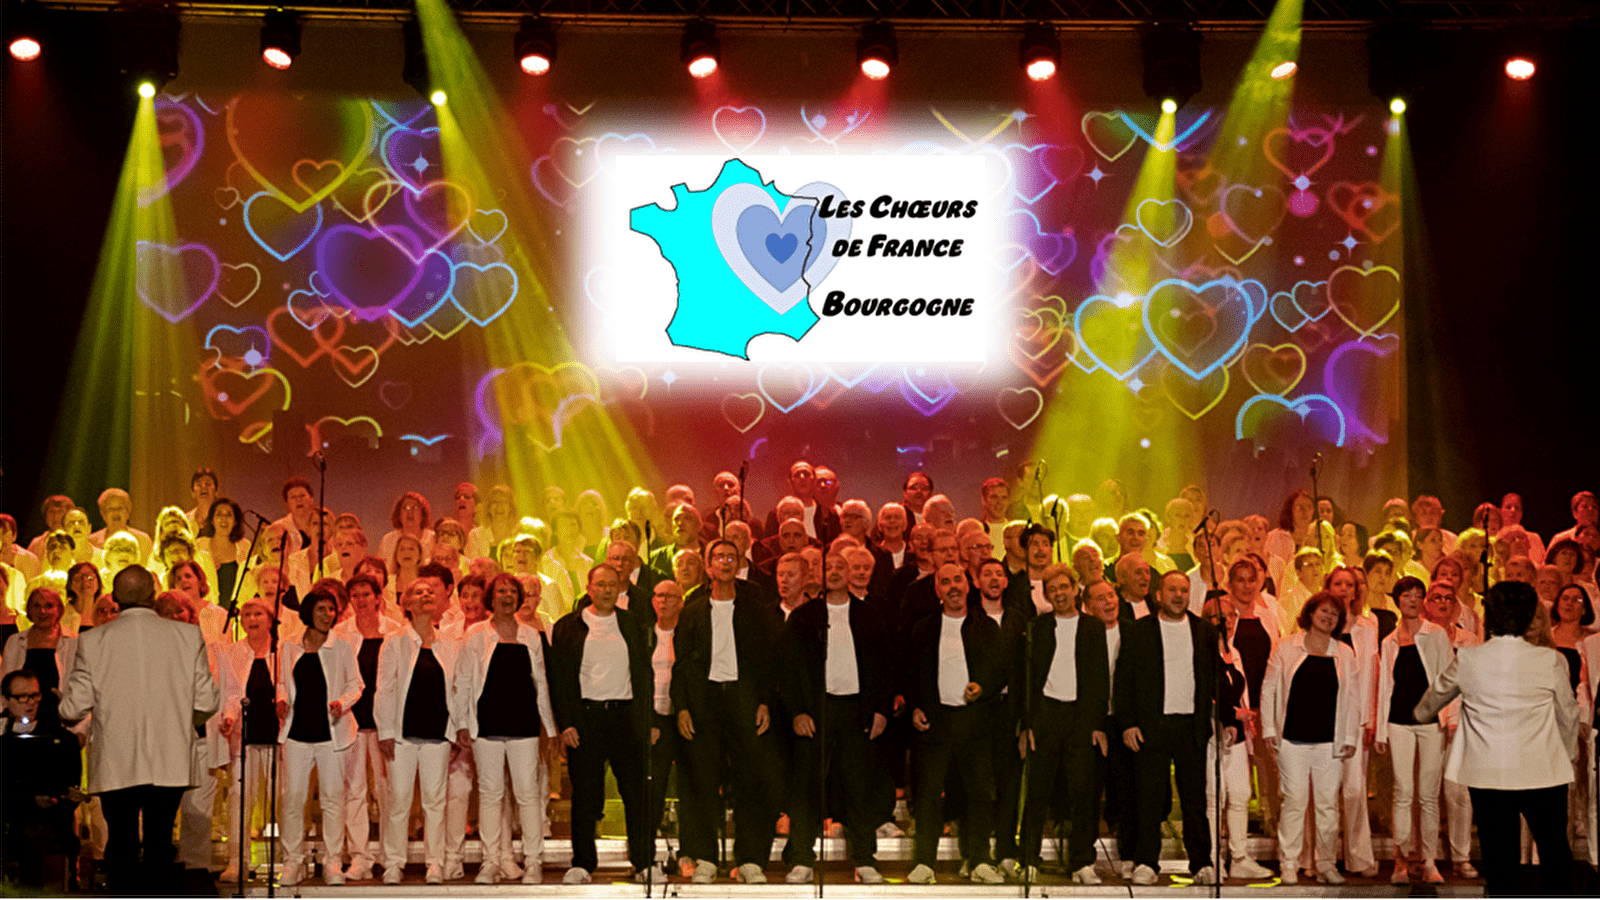 Chœurs de France sing 'LIVE 80